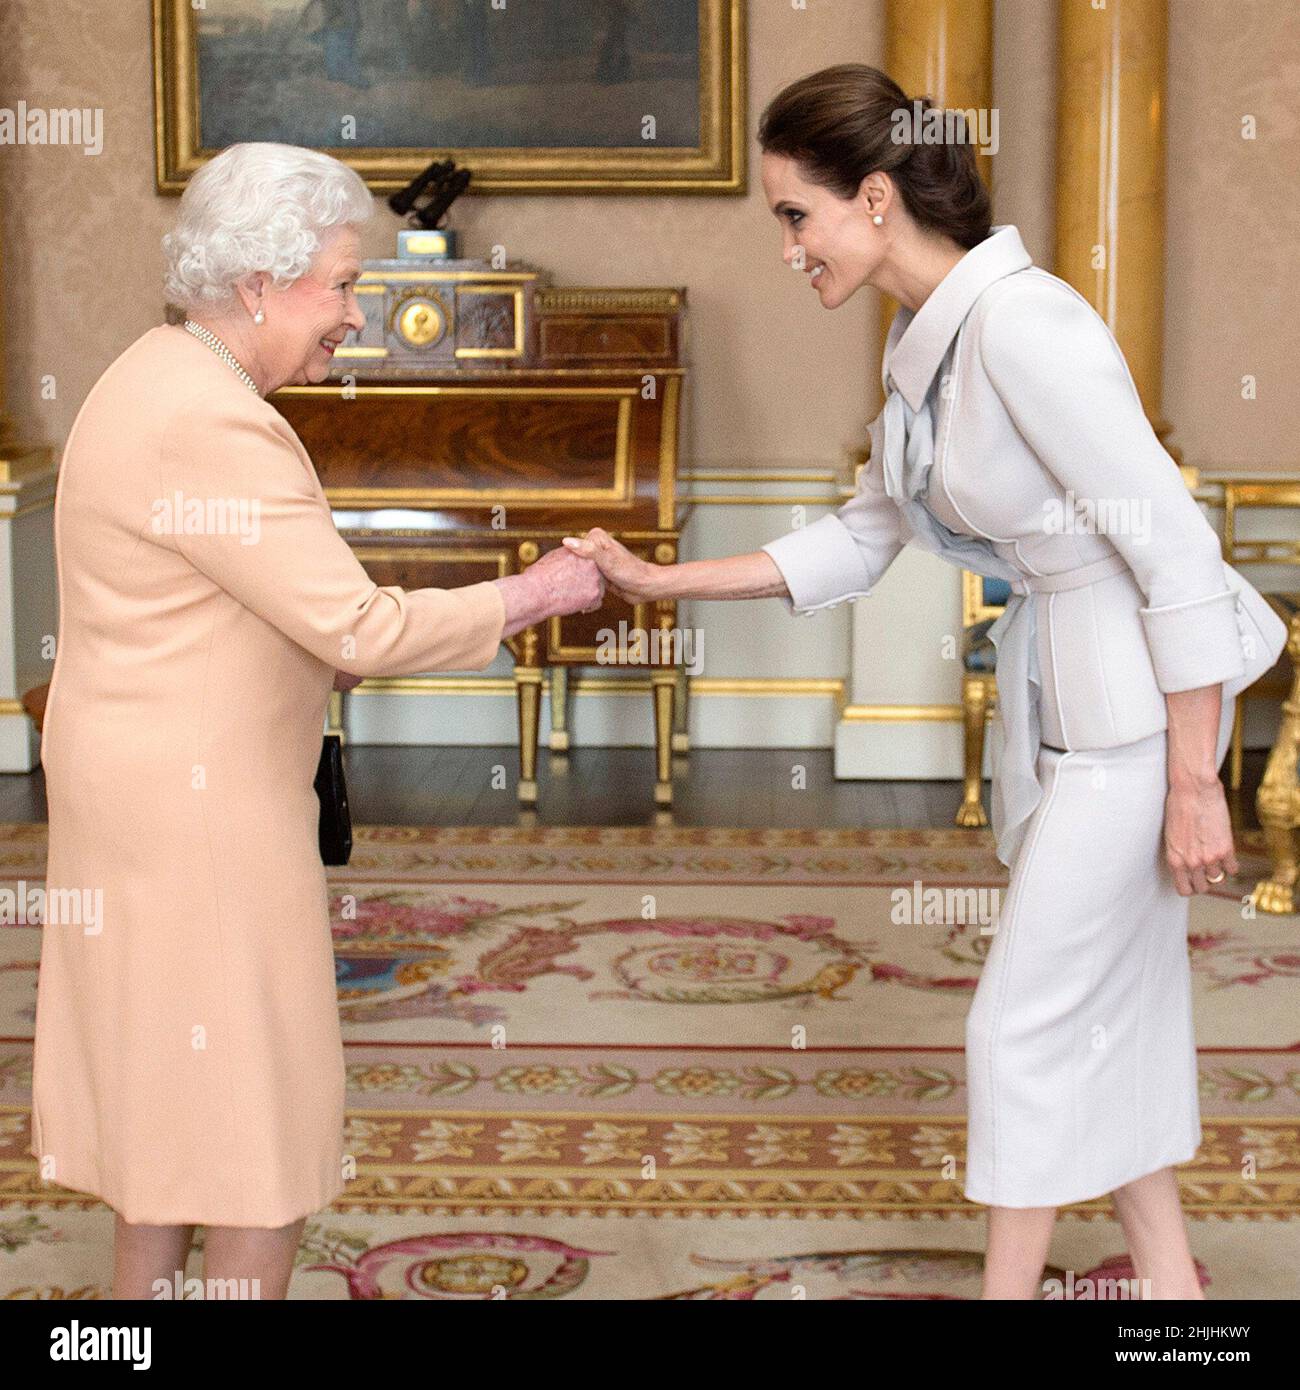 Foto di archivio datata 10/10/14 dell'attrice Angelina Jolie (destra) presentata con l'insegna di un comandante onorario Dame dell'ordine più distinto di San Michele e San Giorgio della Regina Elisabetta II nella stanza 1844 a Buckingham Palace, Londra. Data di emissione: Domenica 30 gennaio 2022. Foto Stock